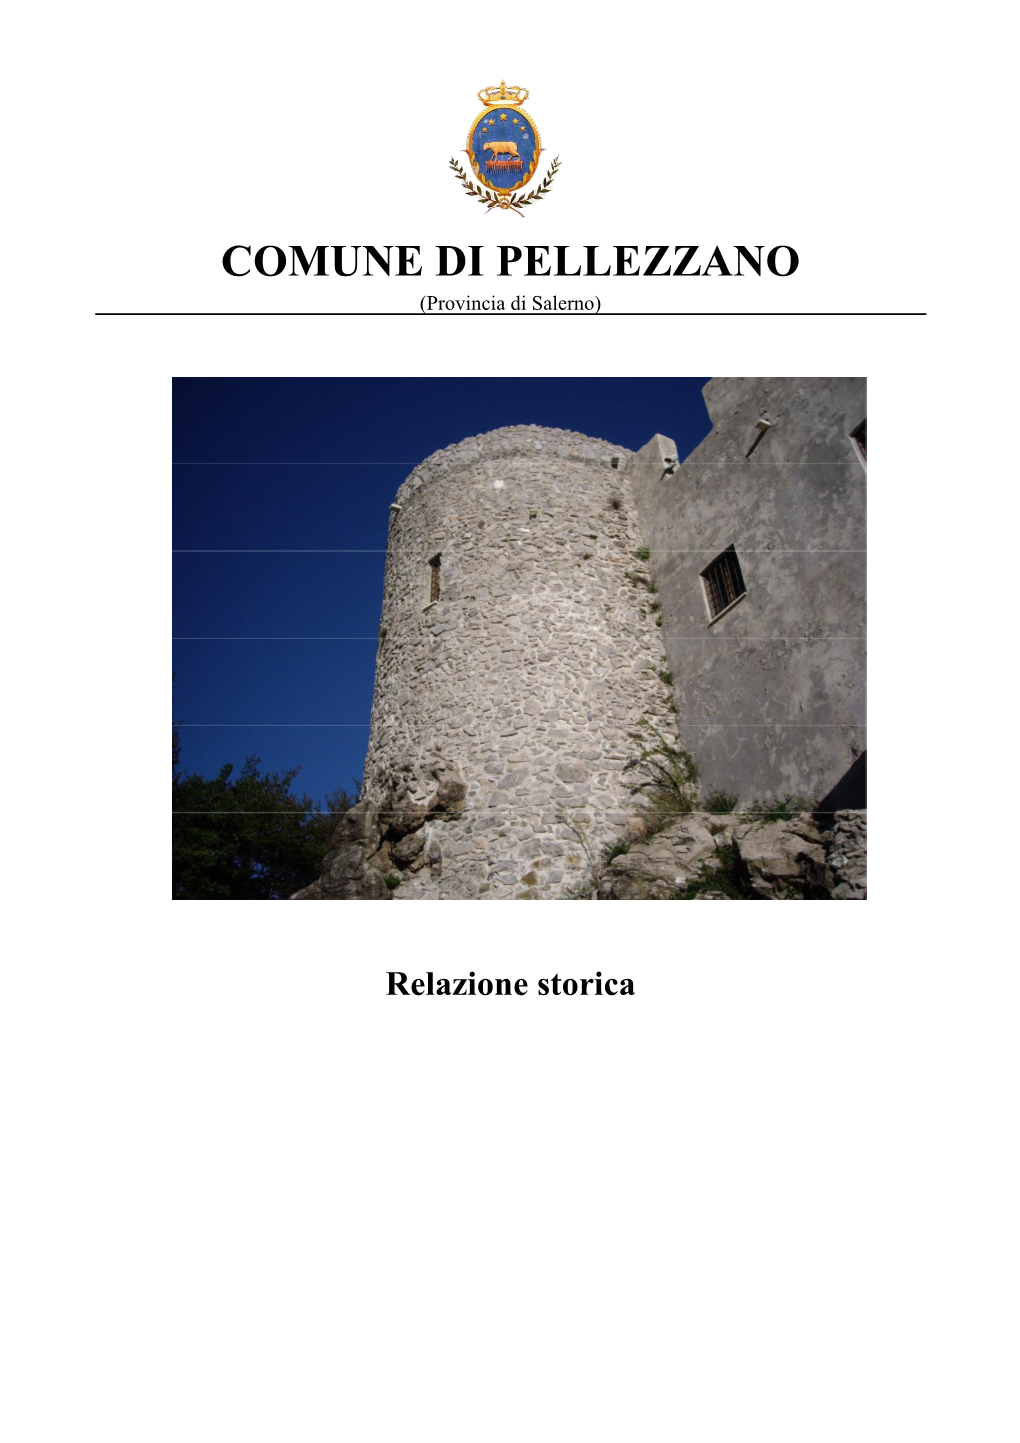 COMUNE DI PELLEZZANO (Provincia Di Salerno)